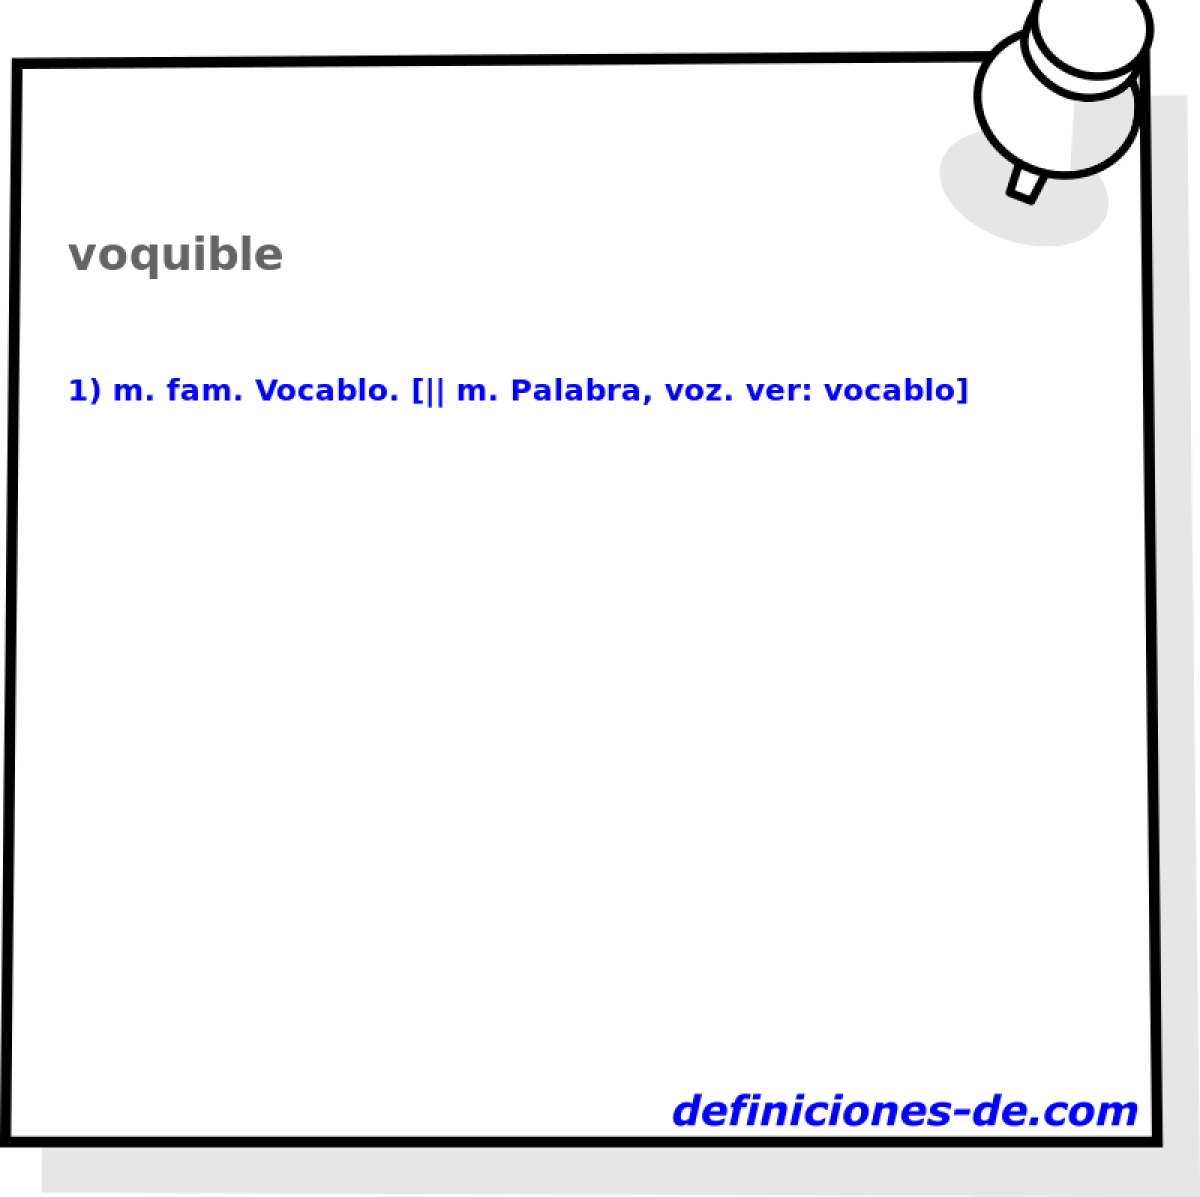 voquible 